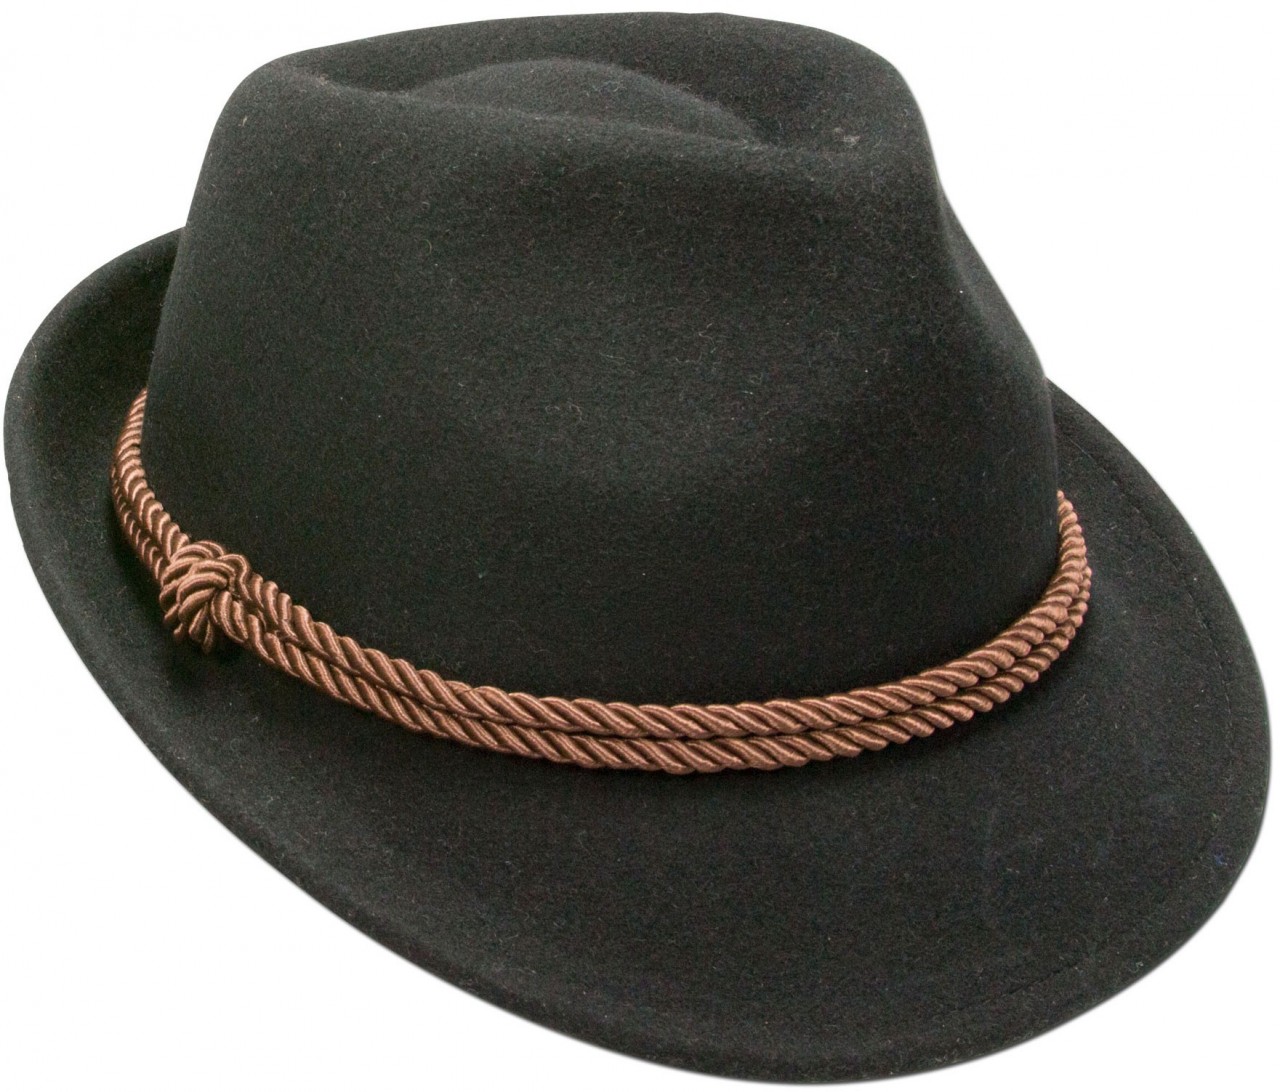 Podgląd: Tradycyjna filcowa czapka ze sznurkiem w kolorze czarnym